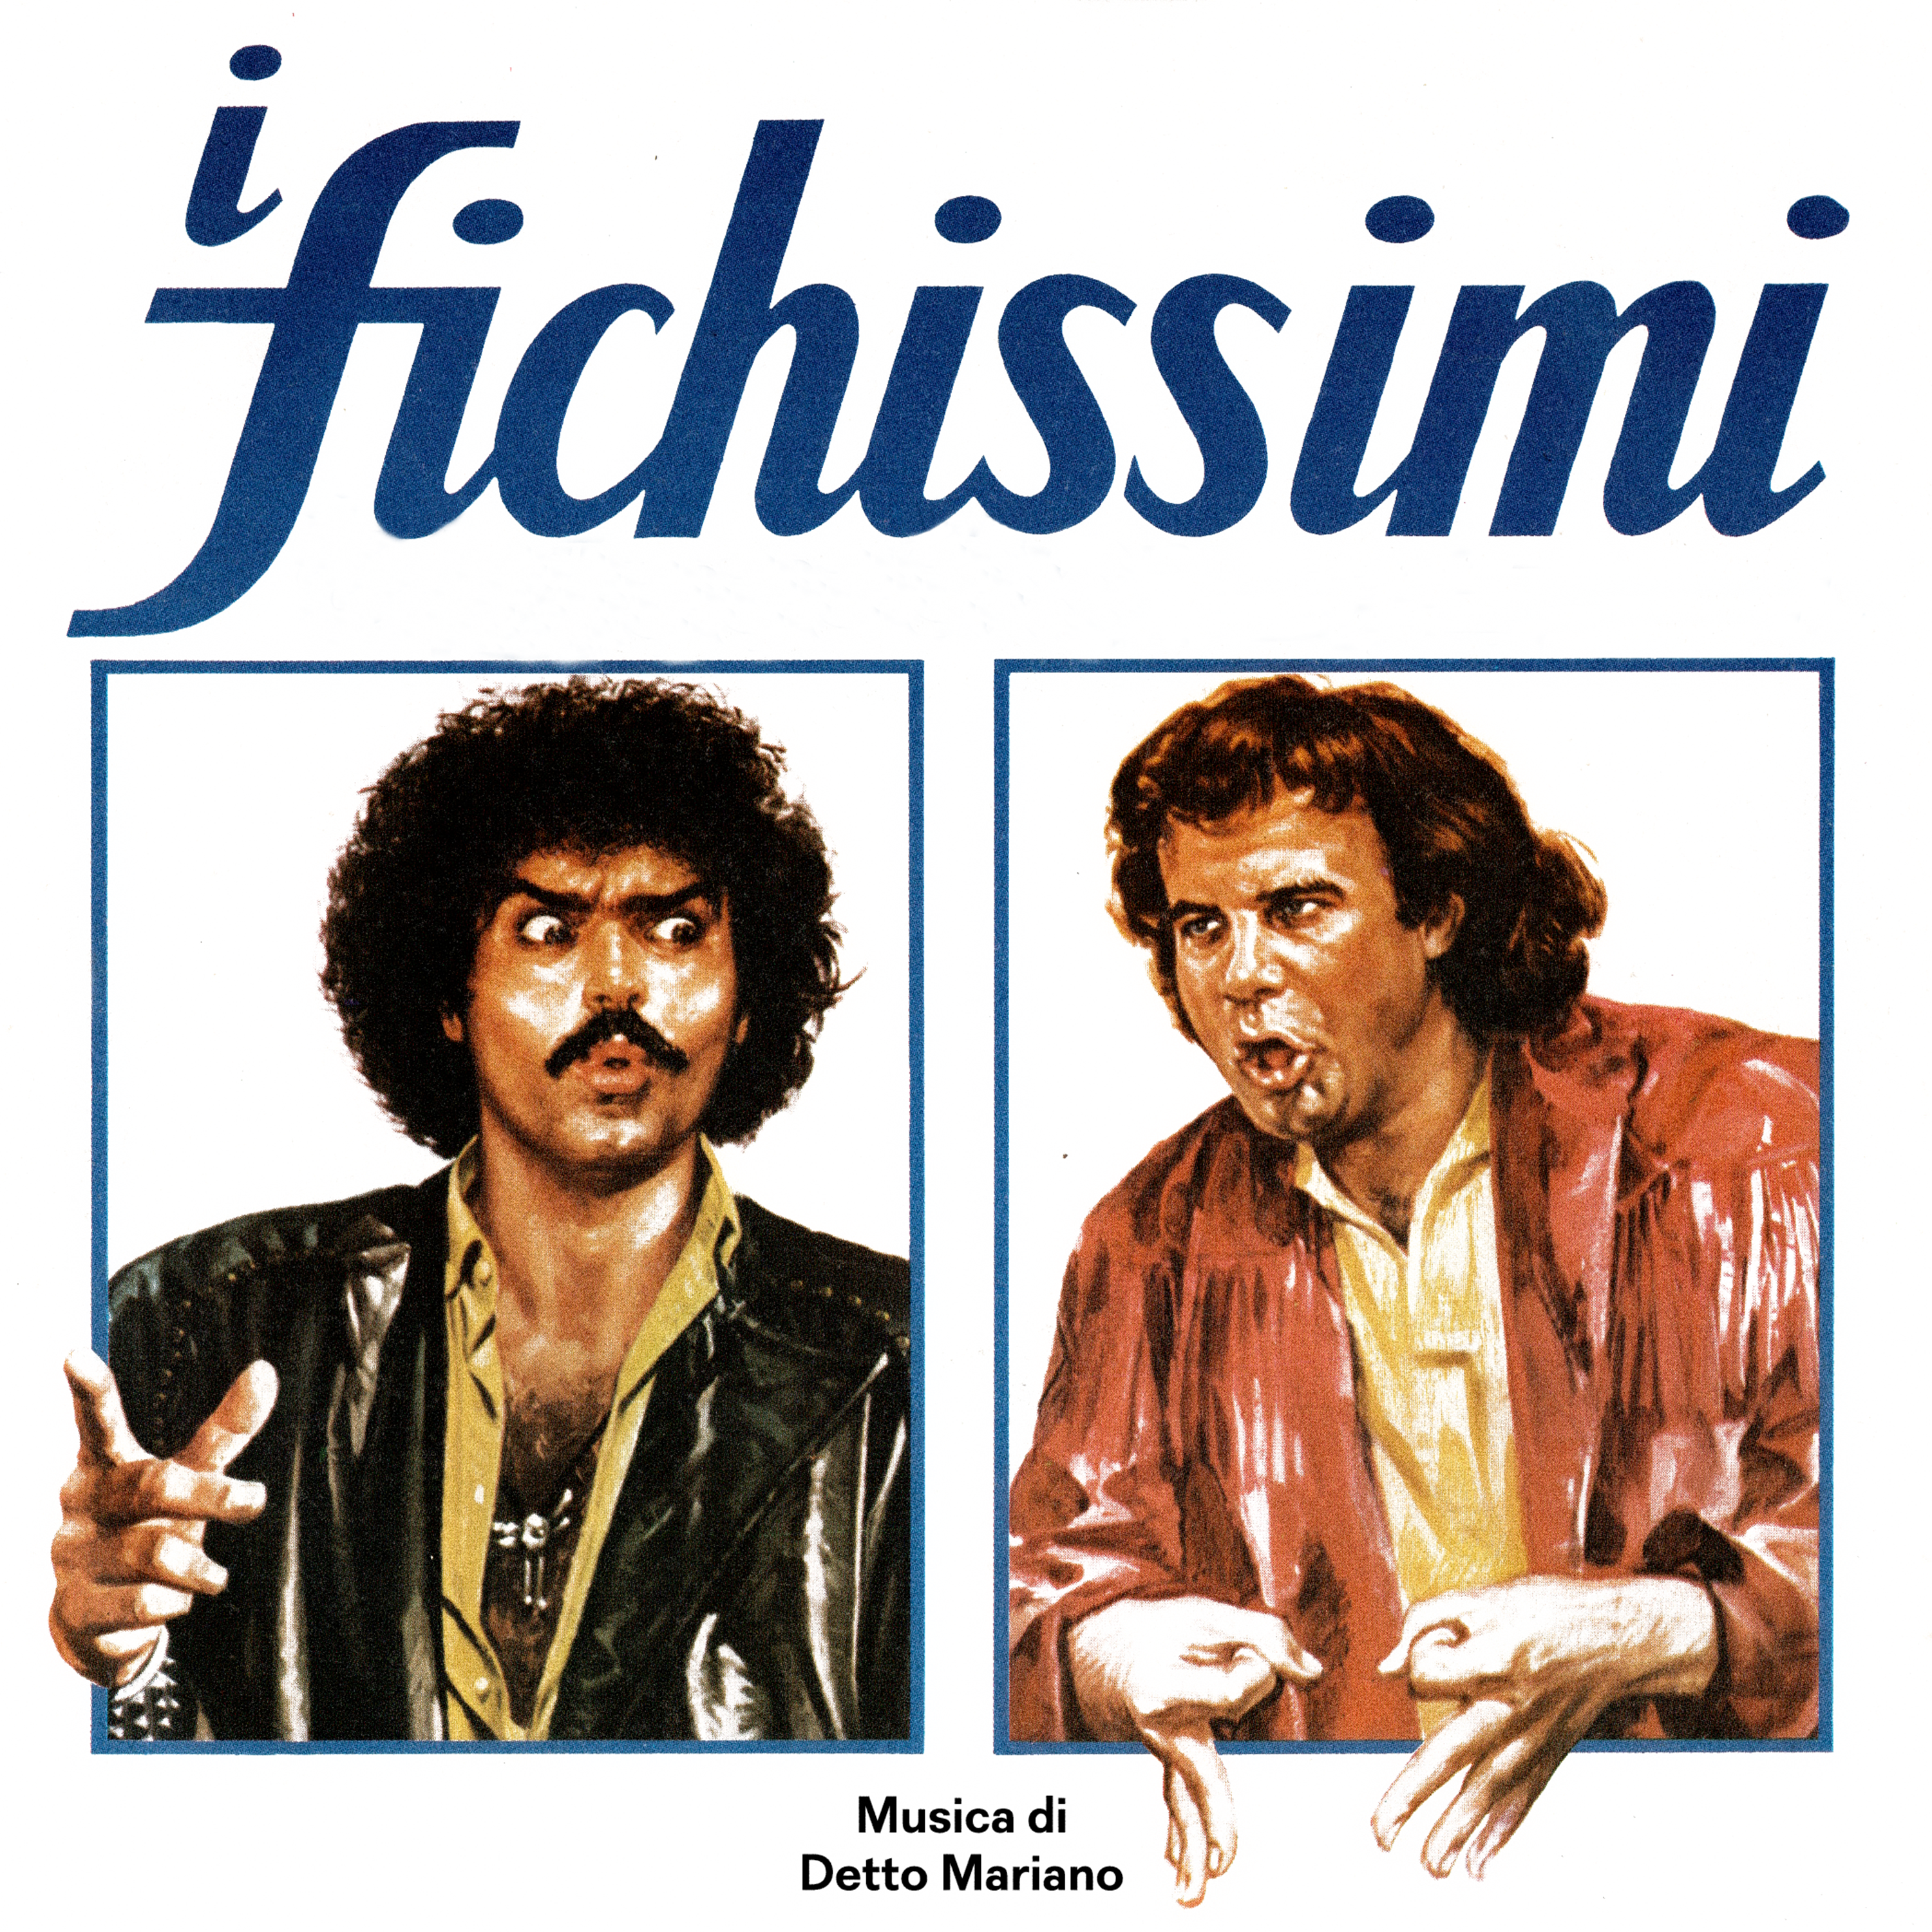 I Fichissimi by Detto Mariano, 1981